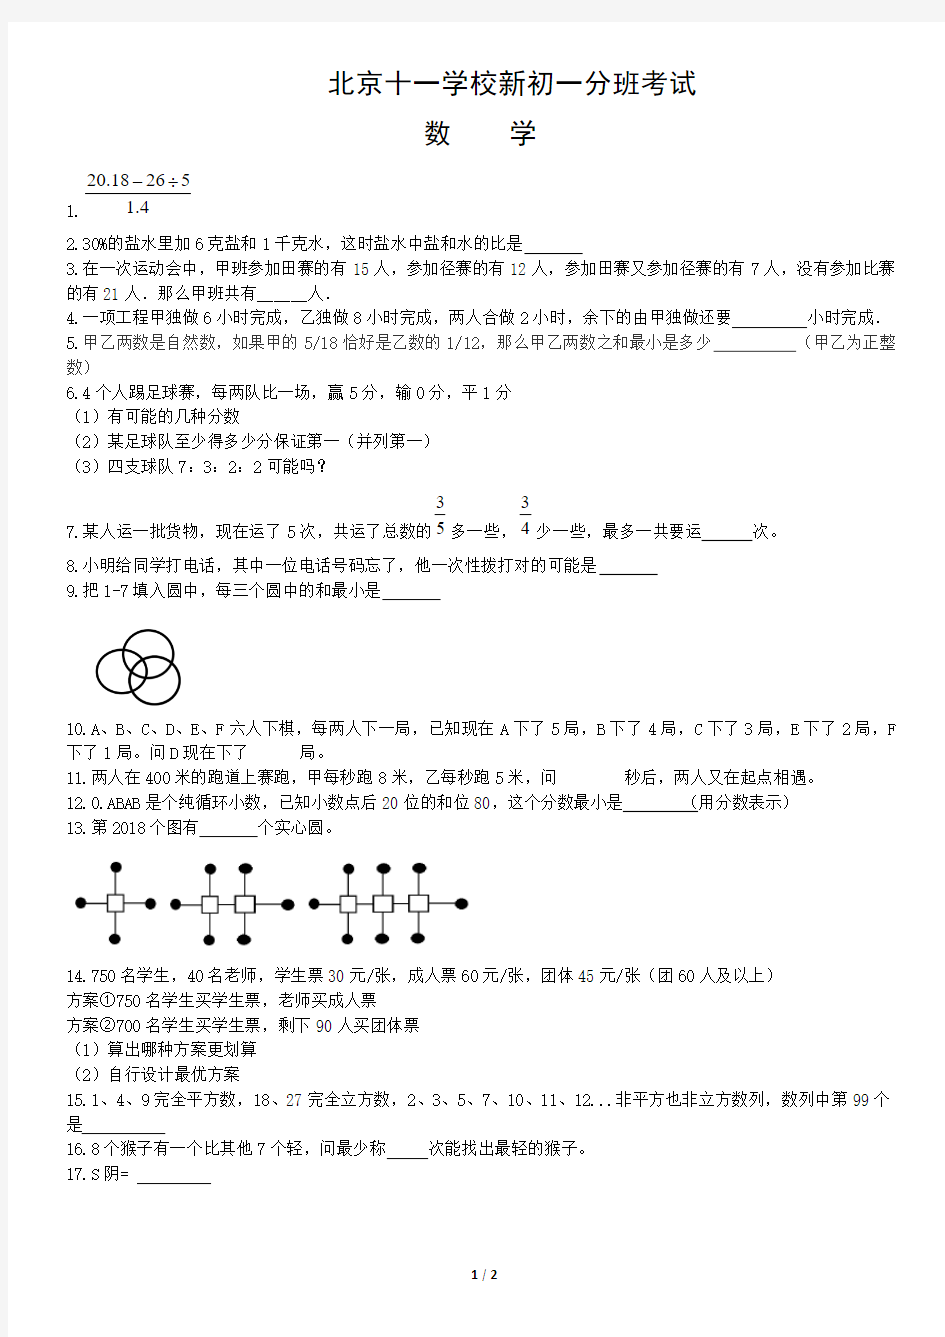 (最新)北京十一学校新初一分班考试数学试卷(PDF)